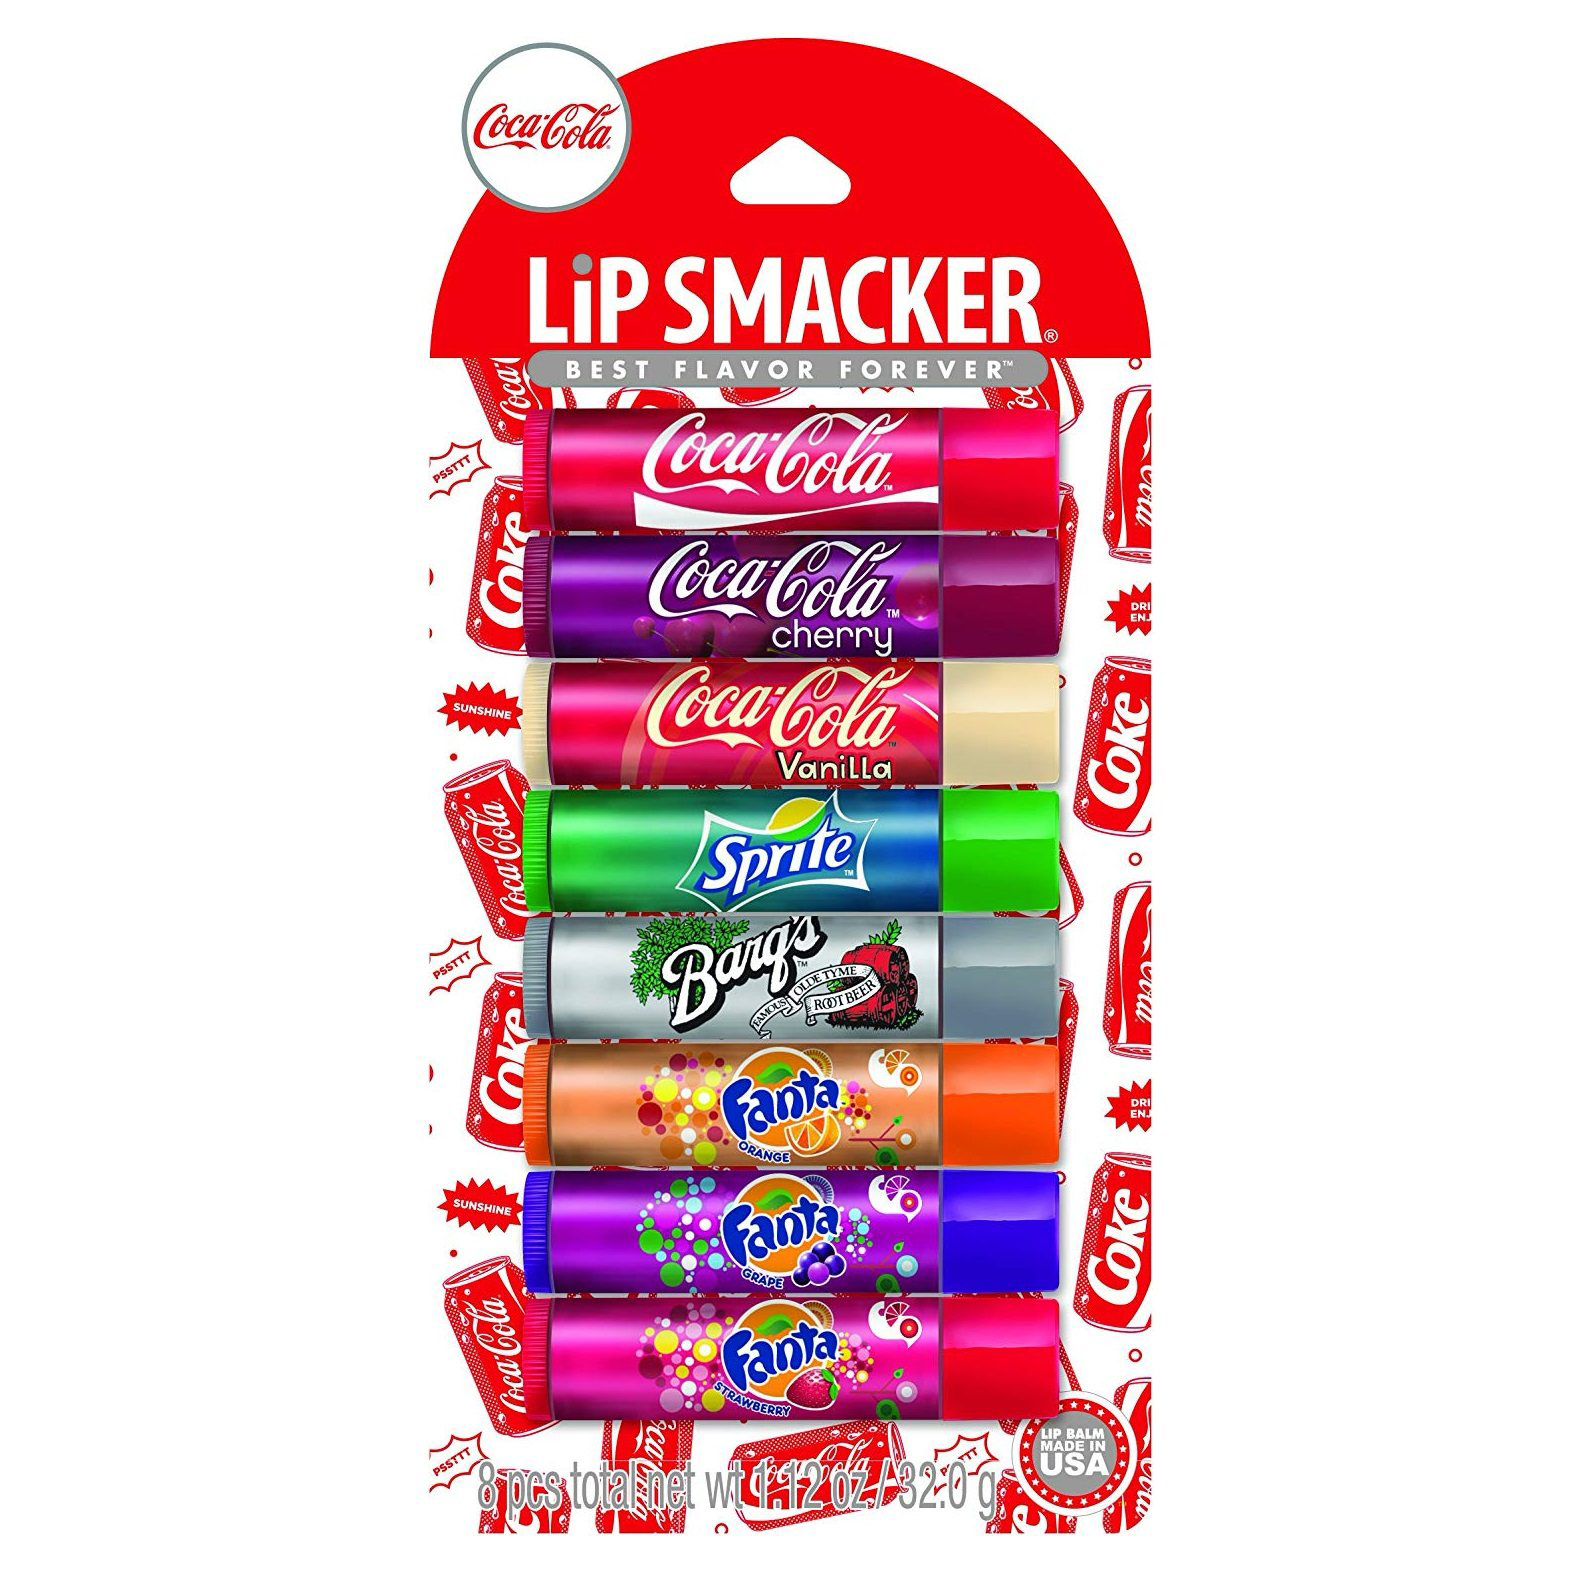 【中亚Prime会员】Lip Smacker 可口可乐派对唇彩套装 8支装 到手价44元 